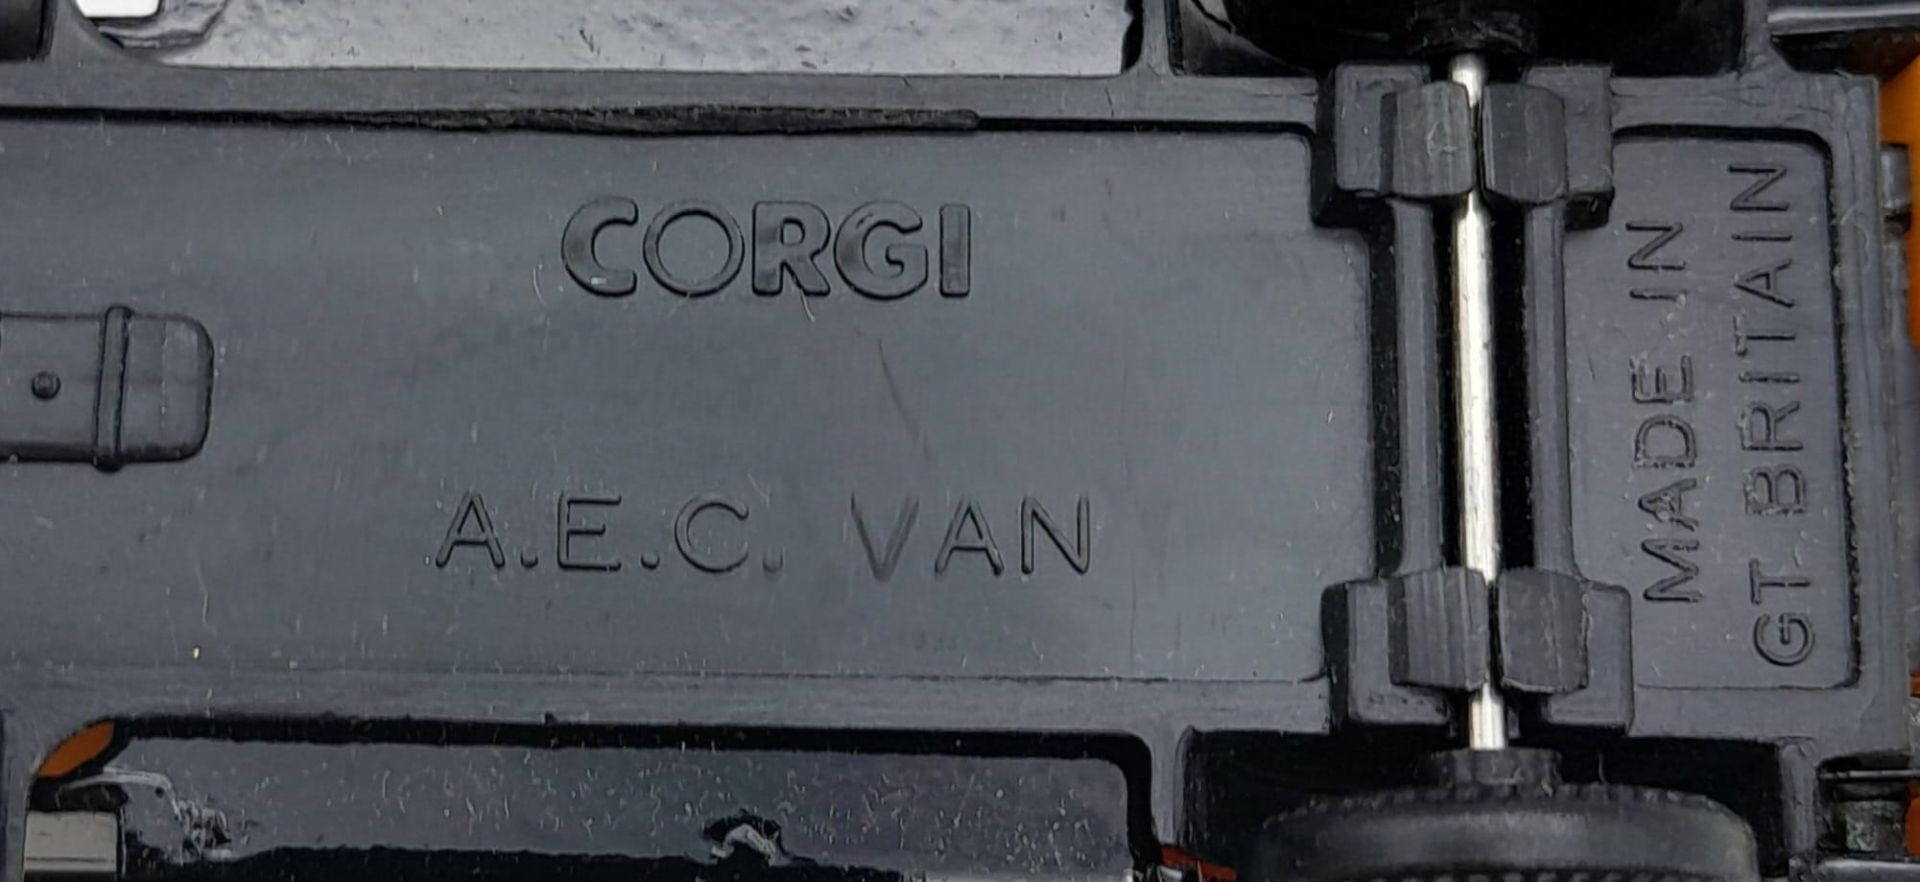 3 "CORGI" DIE CAST VEHICLES , A MORRIS TRUCK , A.E.C. VAN PLUS A FORD VAN ALL IN GOOD CONDITION. - Bild 6 aus 8